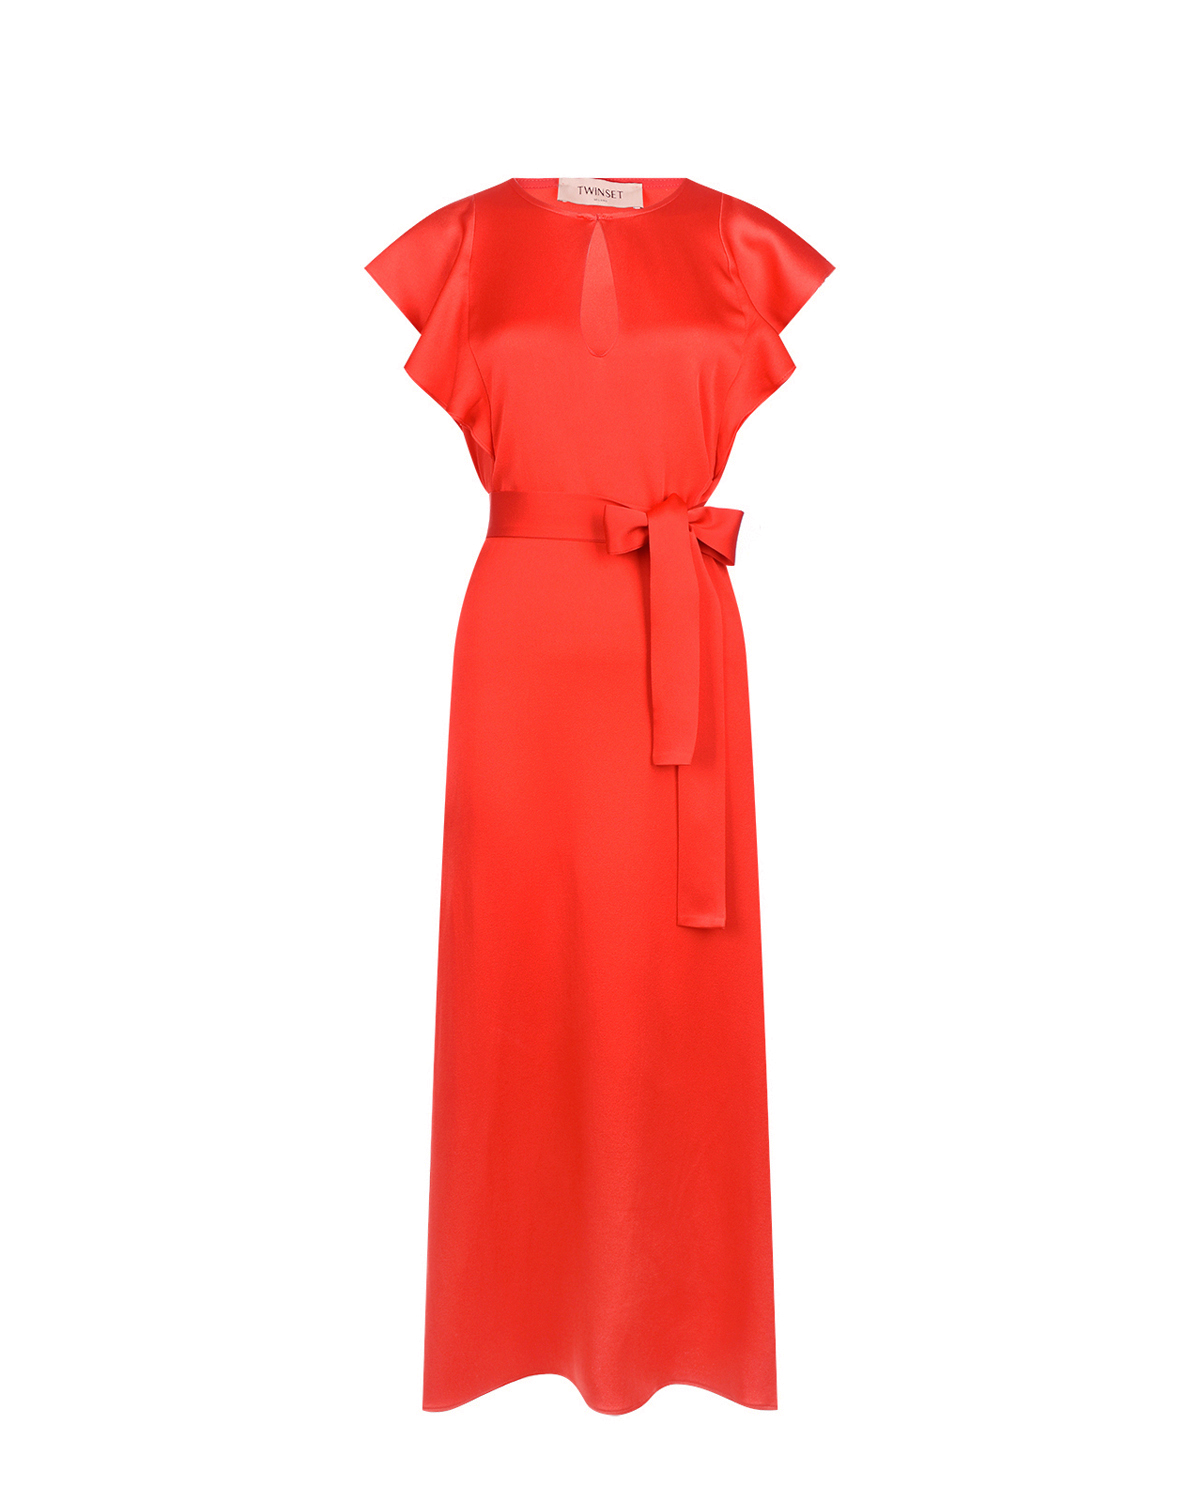 Красное платье с поясом TWINSET, размер 44, цвет красный - фото 1